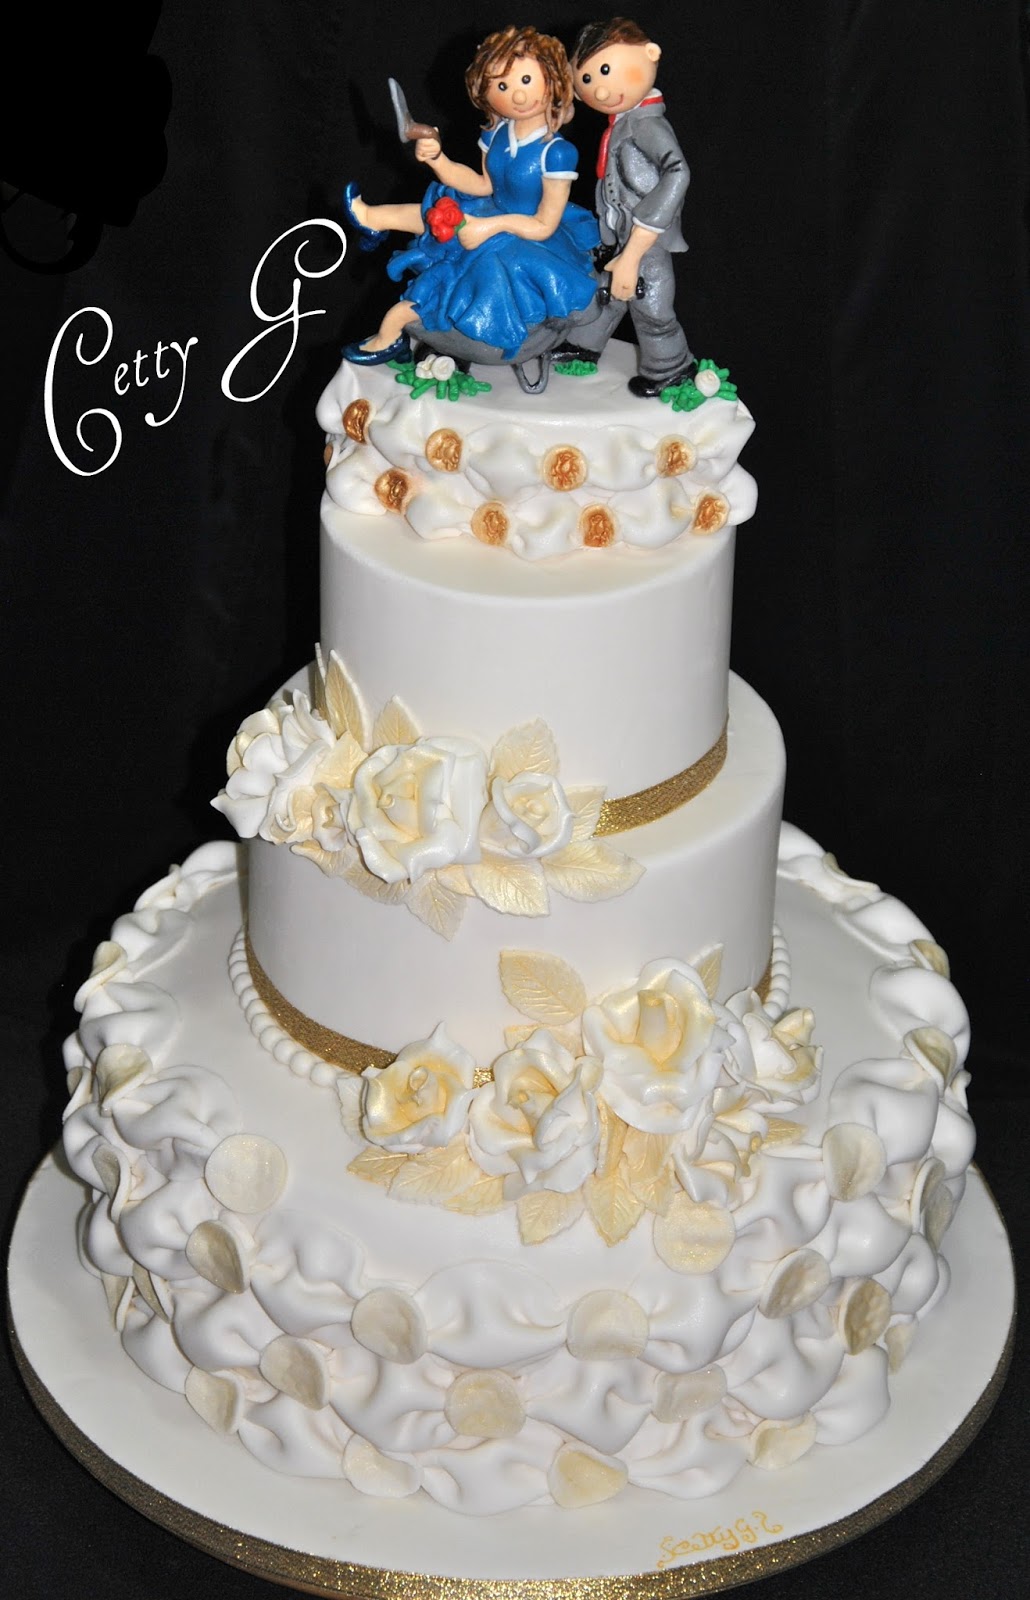 Le torte decorate di Cetty G Wedding Cake 50° anniversario...tecnica jpg (1030x1600)